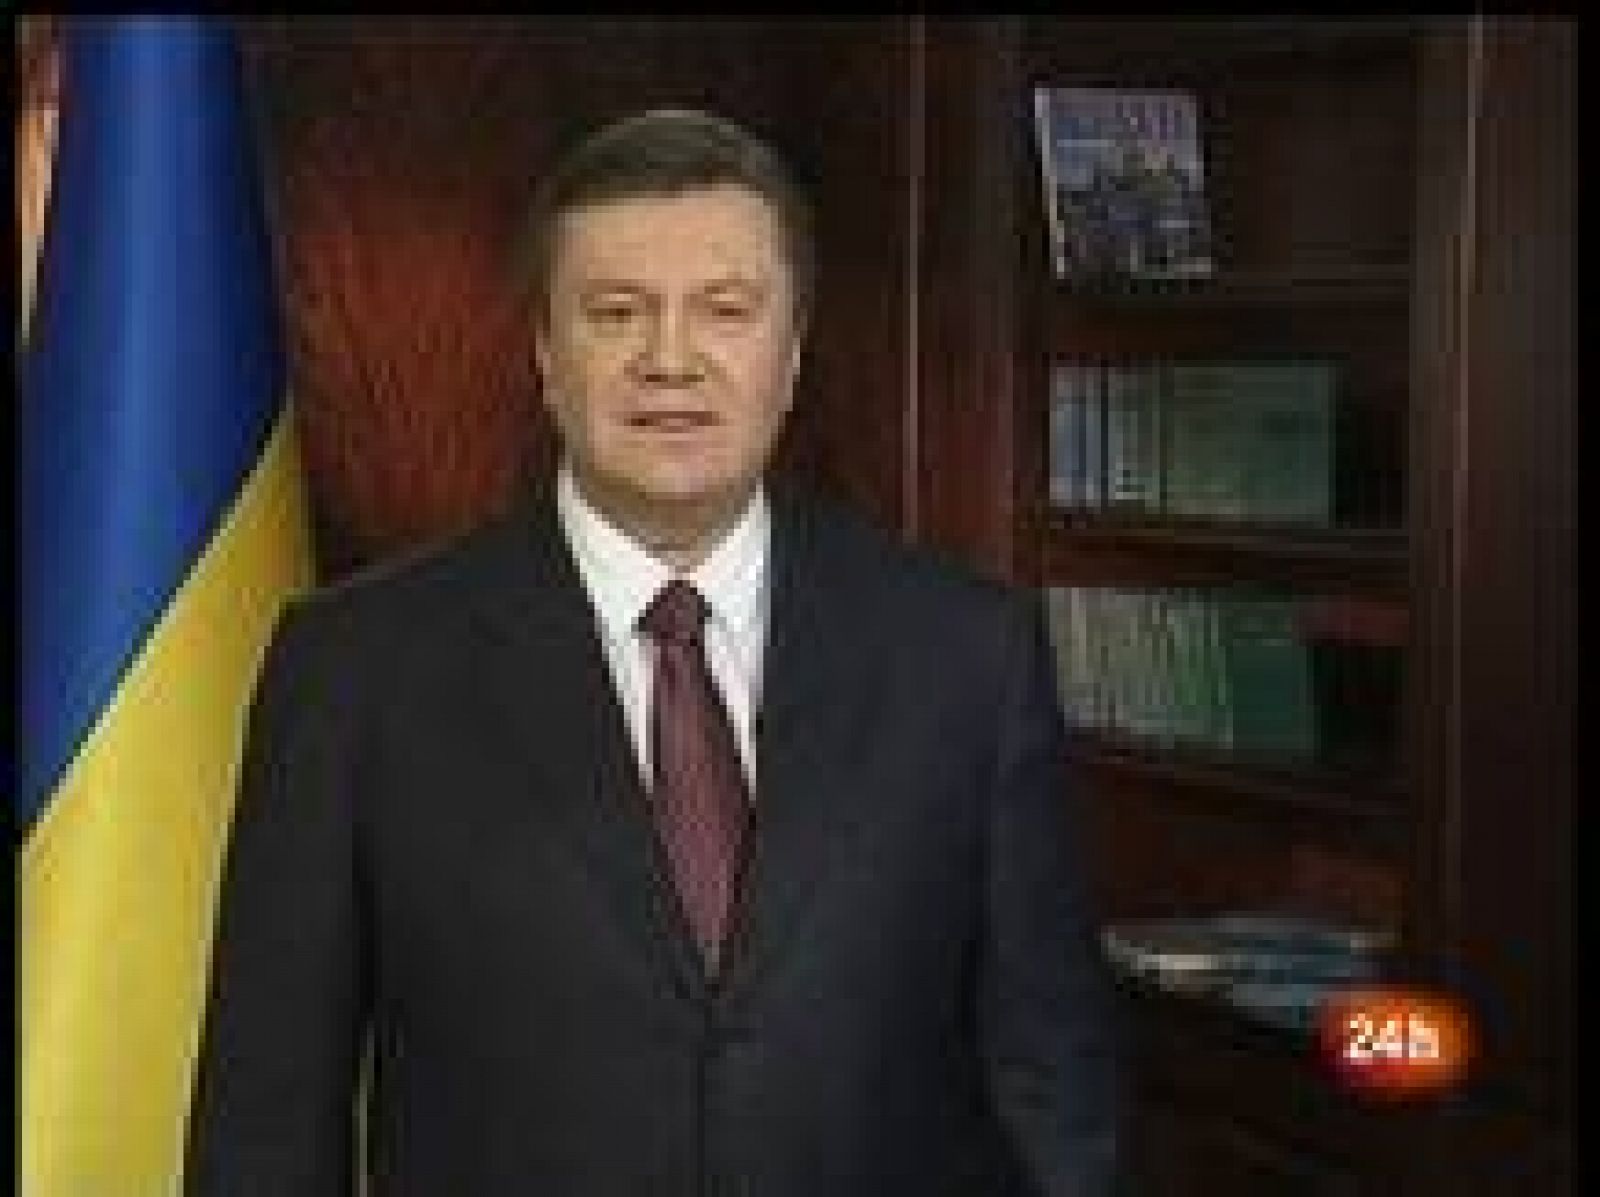 El líder opositor ucraniano, Víctor Yanukóvich, ve reducida su ventaja sobre la primera ministra, Yulia Timoshenko, según avanza el escrutinio de los comicios presidenciales del domingo, informó la Comisión Electoral Central (CEC).. Yanukóvich logra el 48,48% de los votos, un 2,62% más que Timoshenko, que obtiene un 45,86%, tras el escrutinio del 85,02% de las papeletas emitidas.